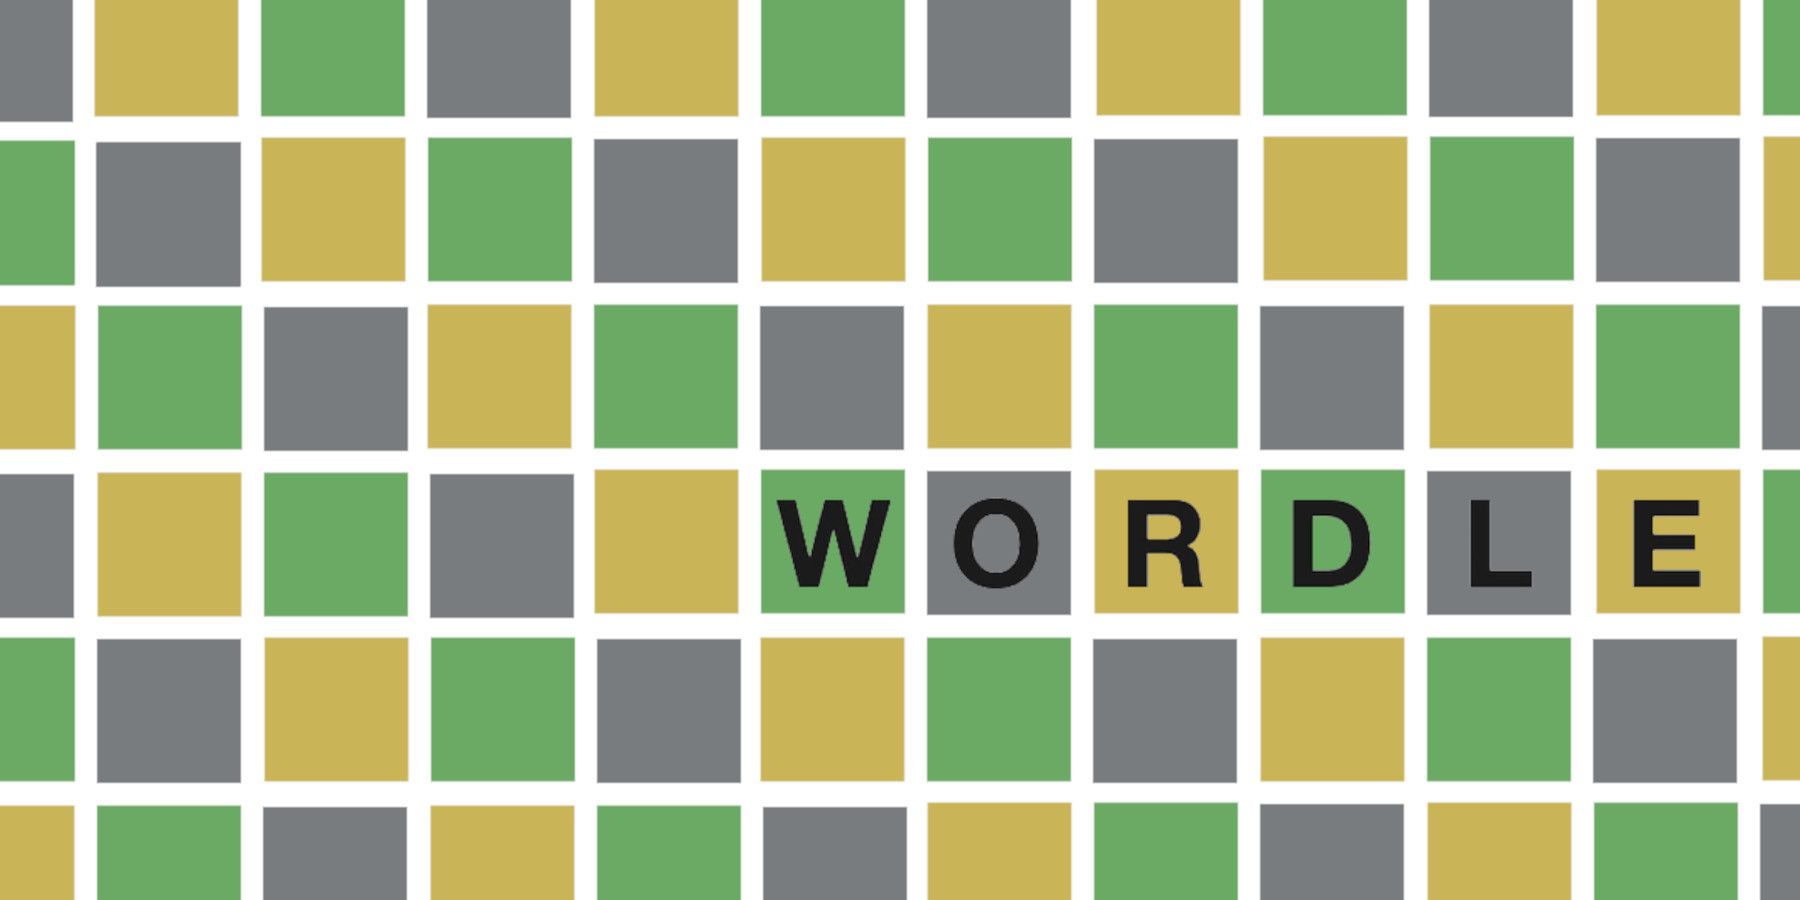 Wordle 274 إجابة في 20 مارس 2022